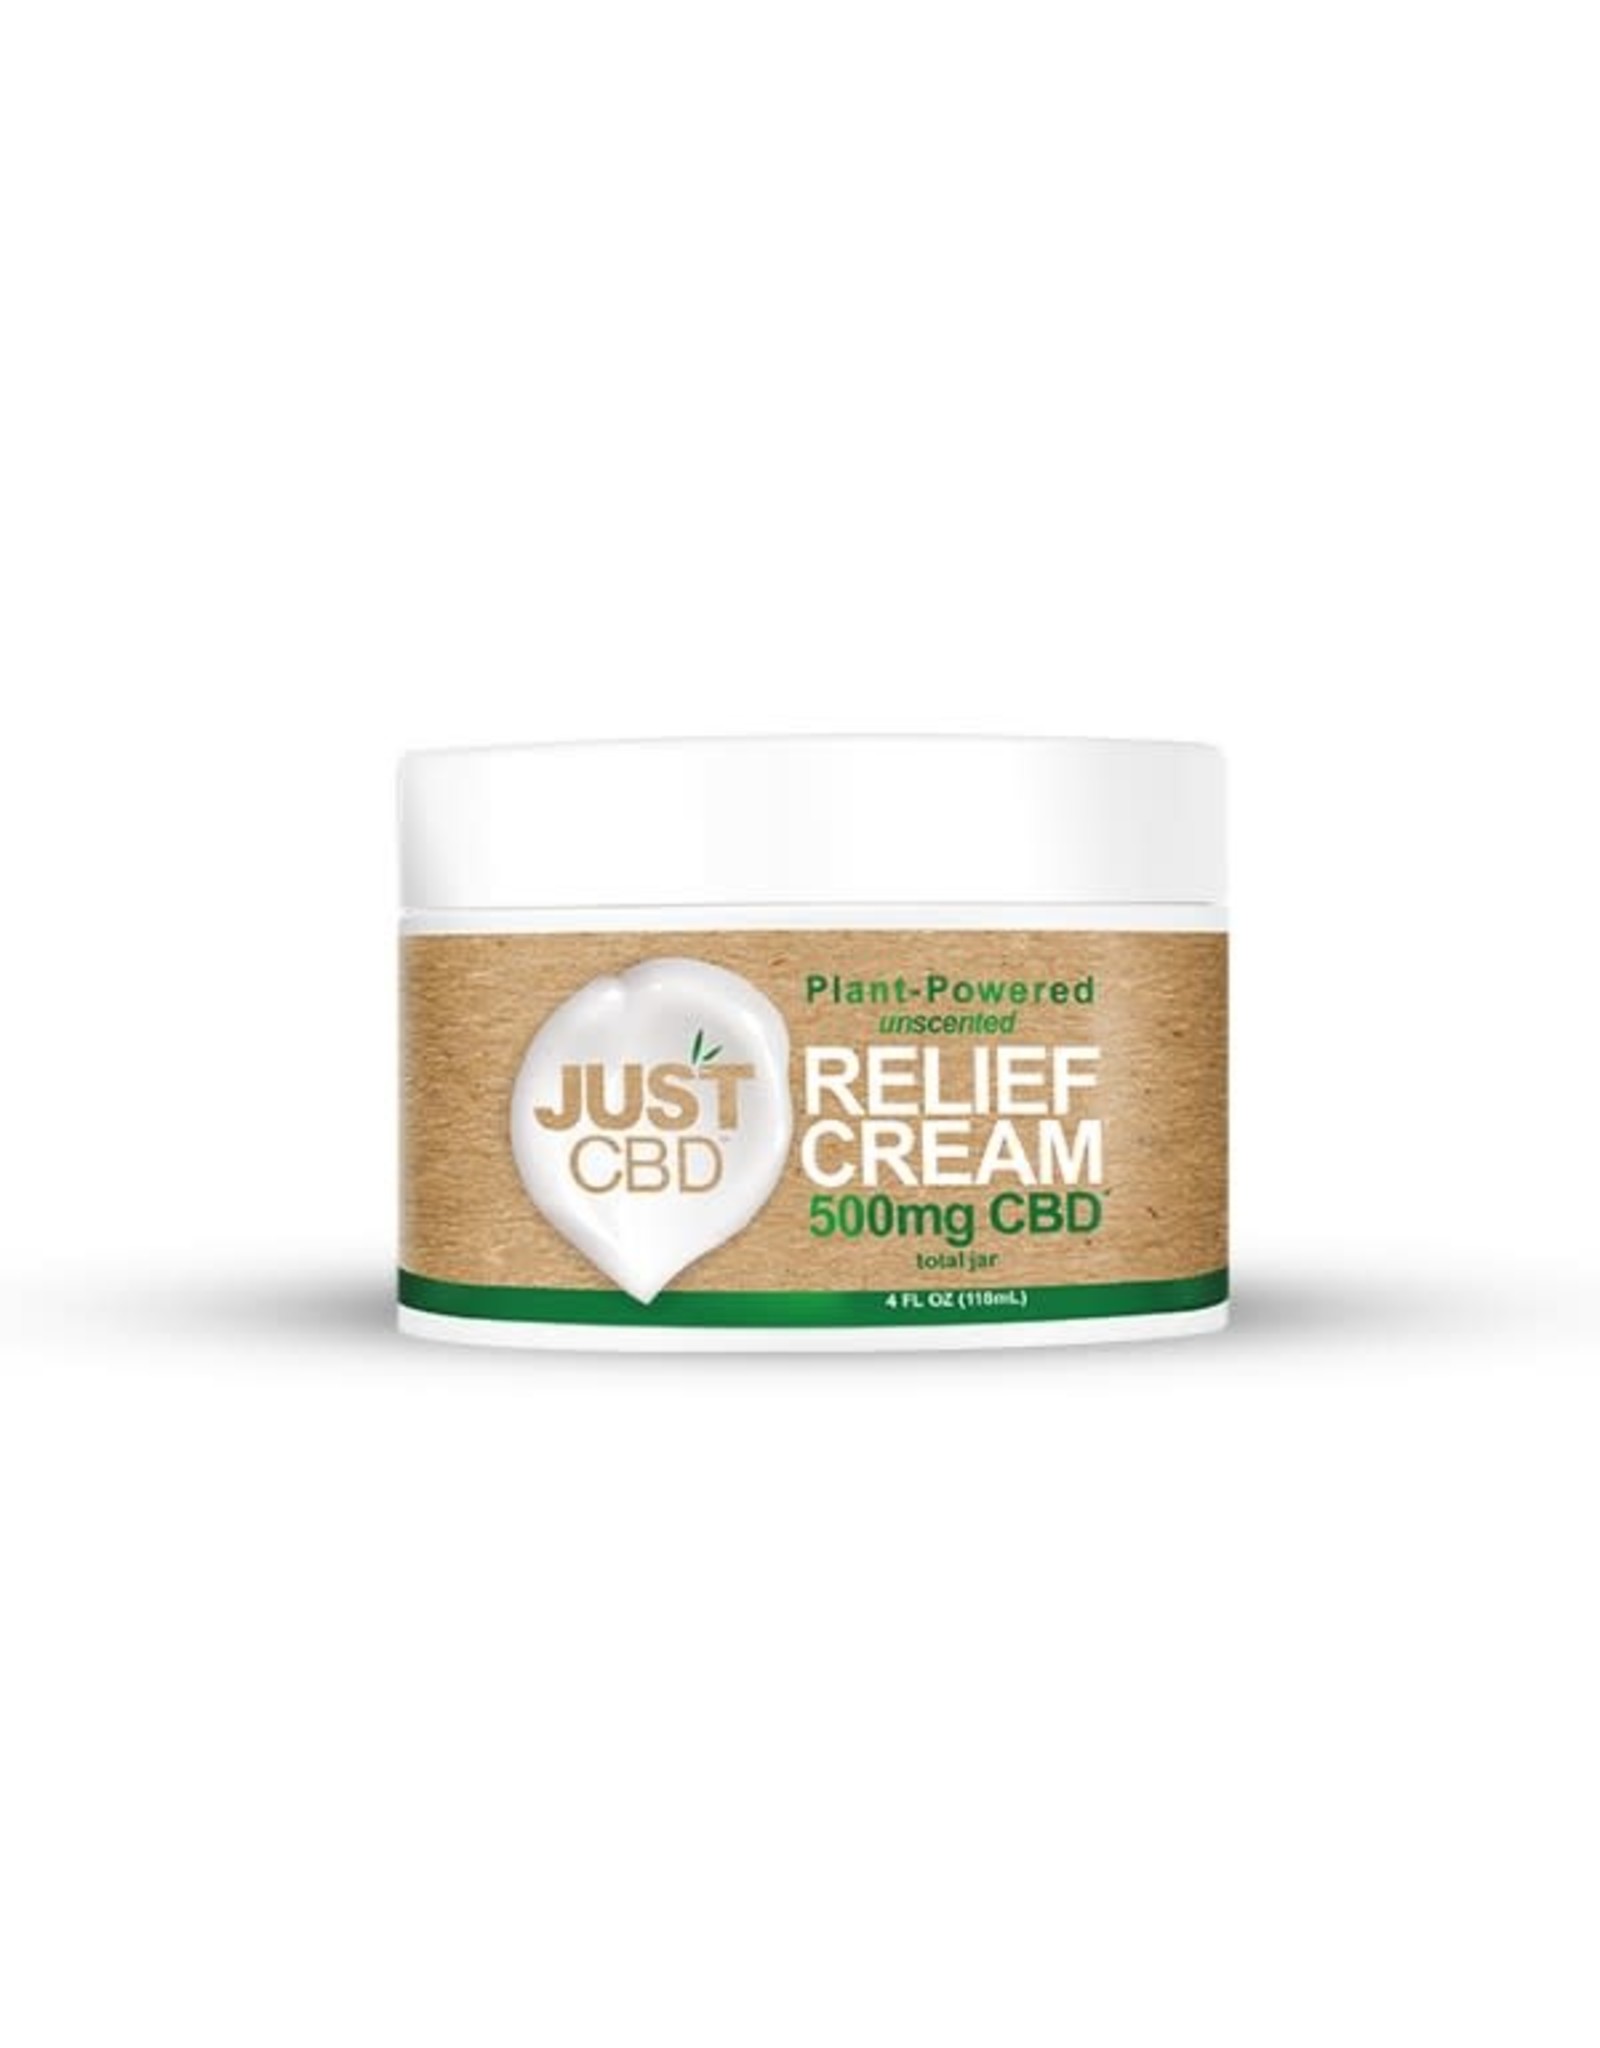 Just CBD Just CBD Relief Cream